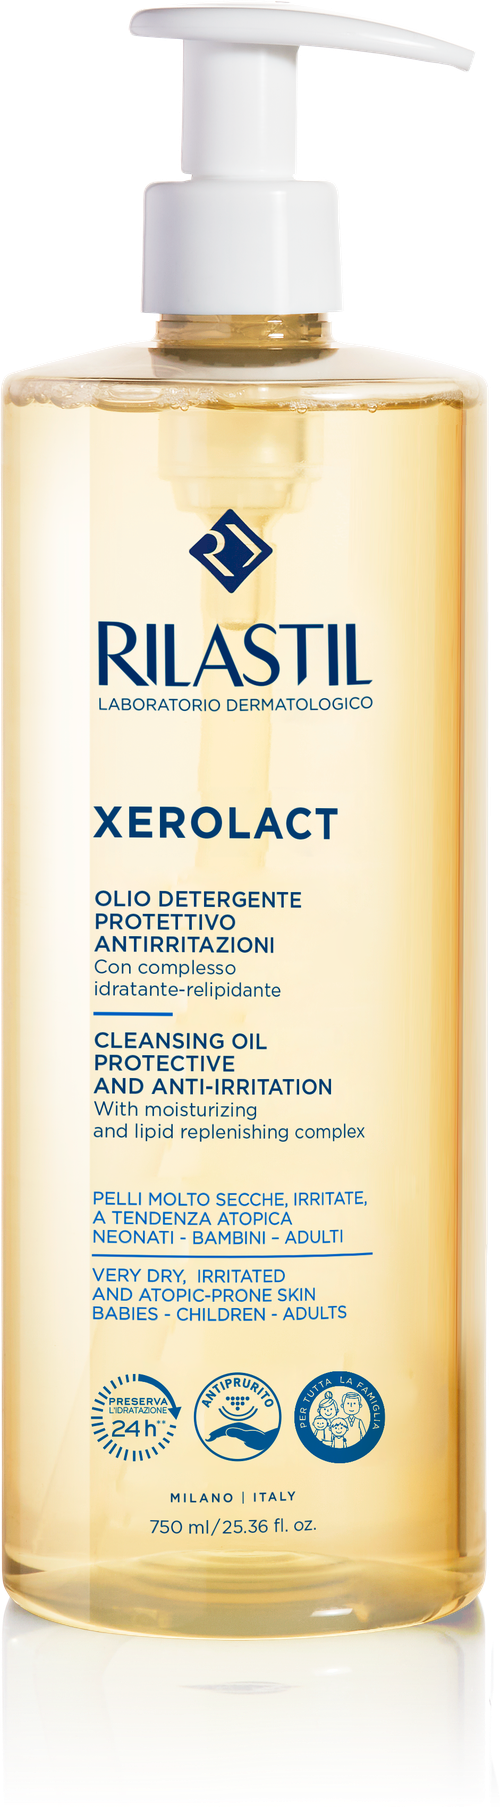 RILASTIL XEROLACT CLEANSING OIL Защитное Успокаивающее масло для очищения 750 мл